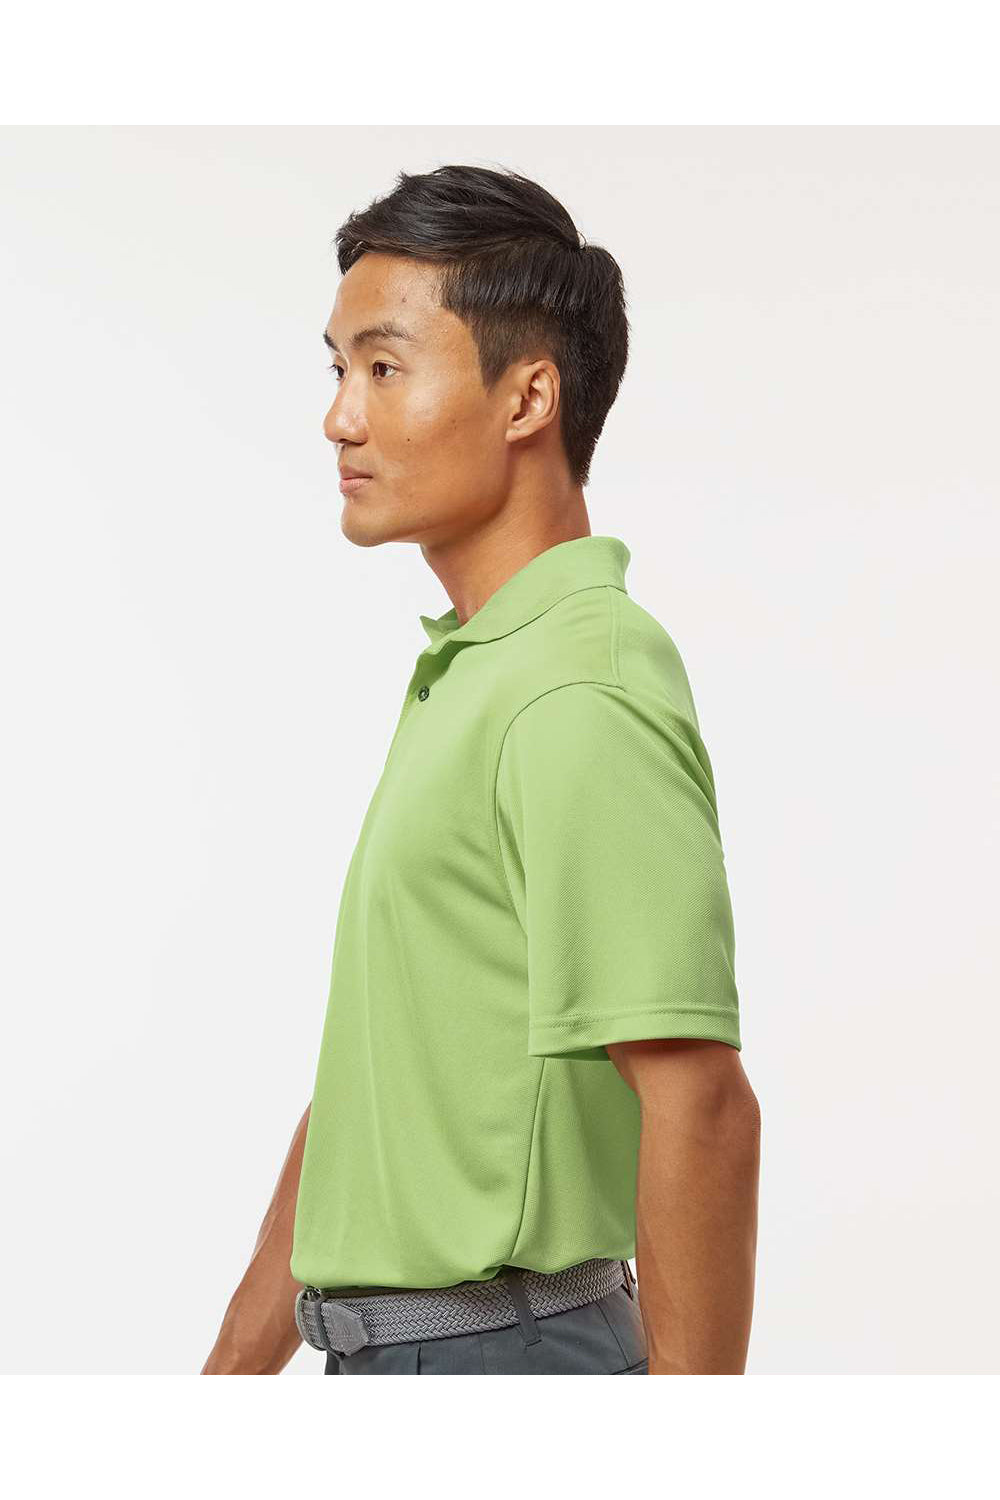 Paragon 100 Mens Saratoga Performance Mini Mesh Short Sleeve Polo Shirt Kiwi Green Model Side